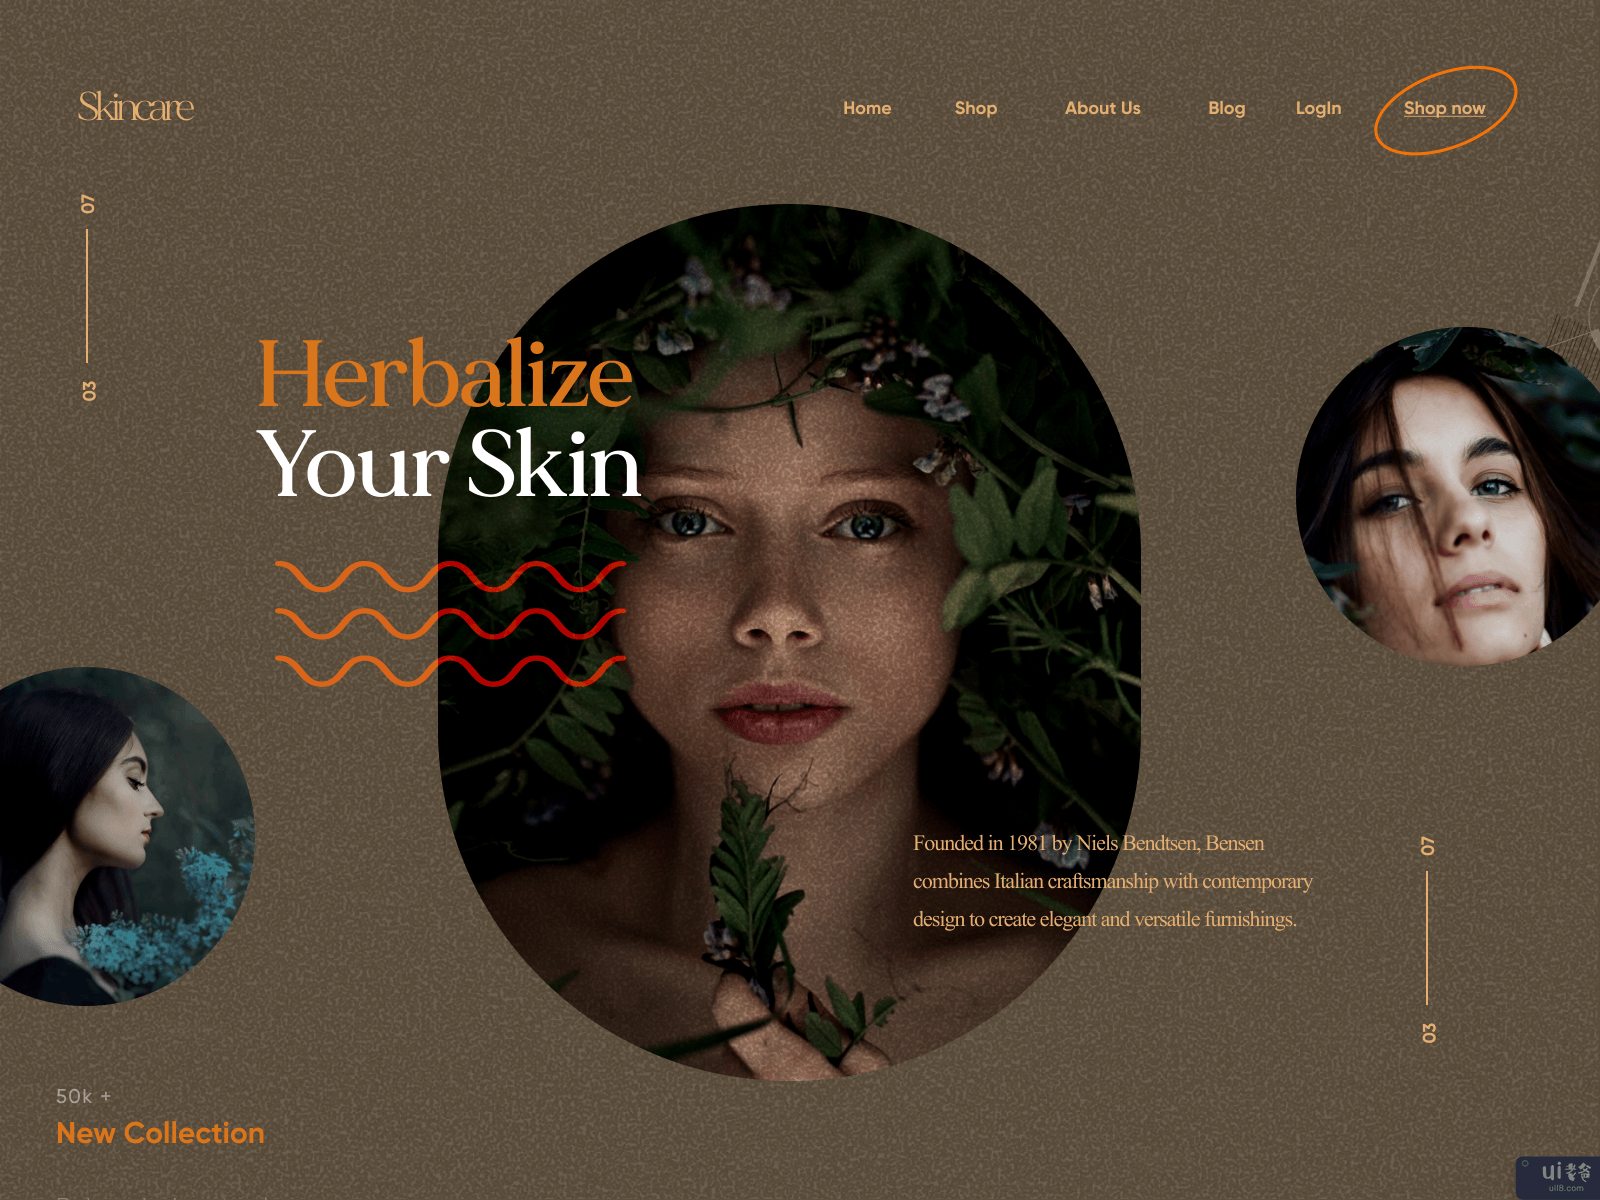 时尚/皮肤护理网站设计(Fashion / Skin Care Website Design)插图1